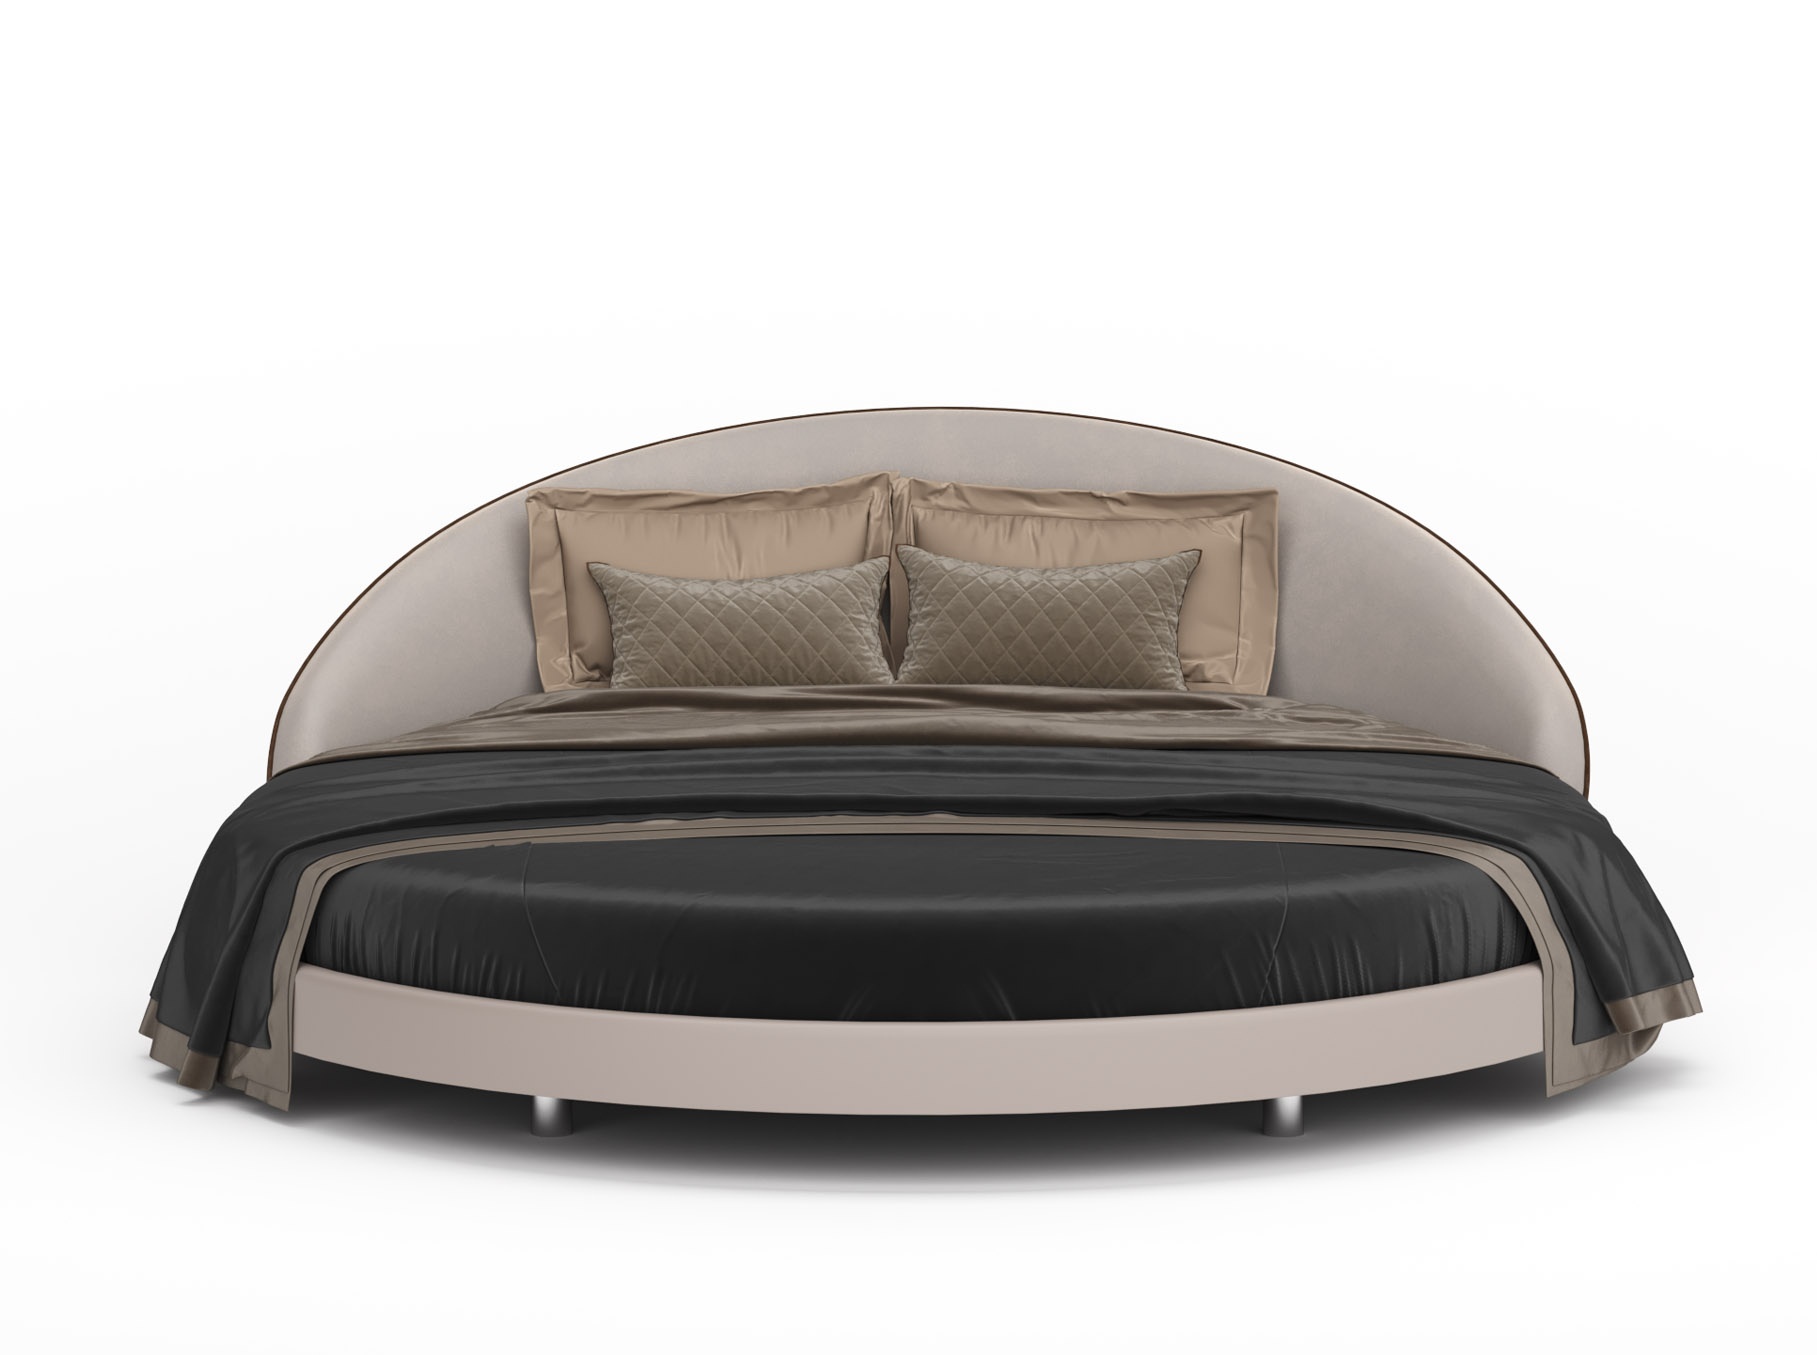 Кровать круглая apriori l actualdesign коричневый 225.0x235.0x90.0 см.